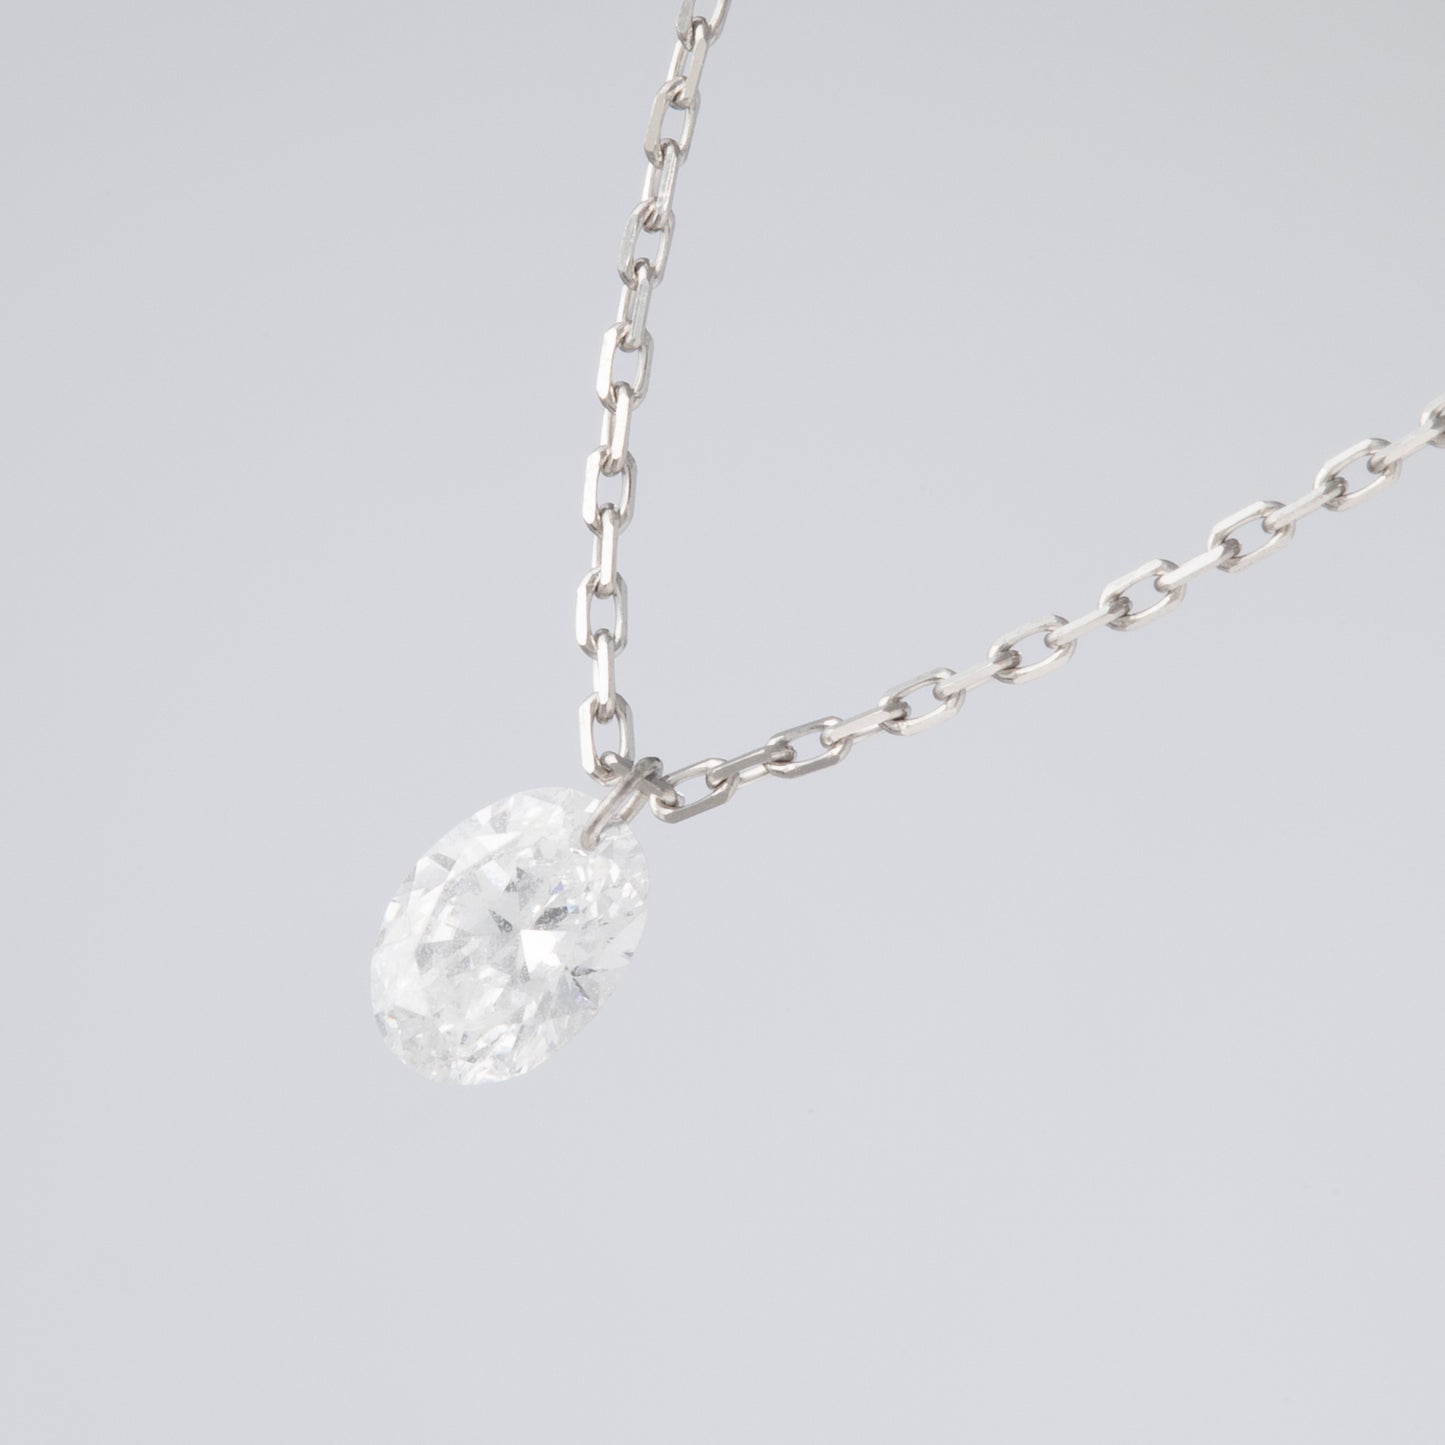 INNOCENCE 1 grain oval necklace / PT850 Platinum / 0.2 carat